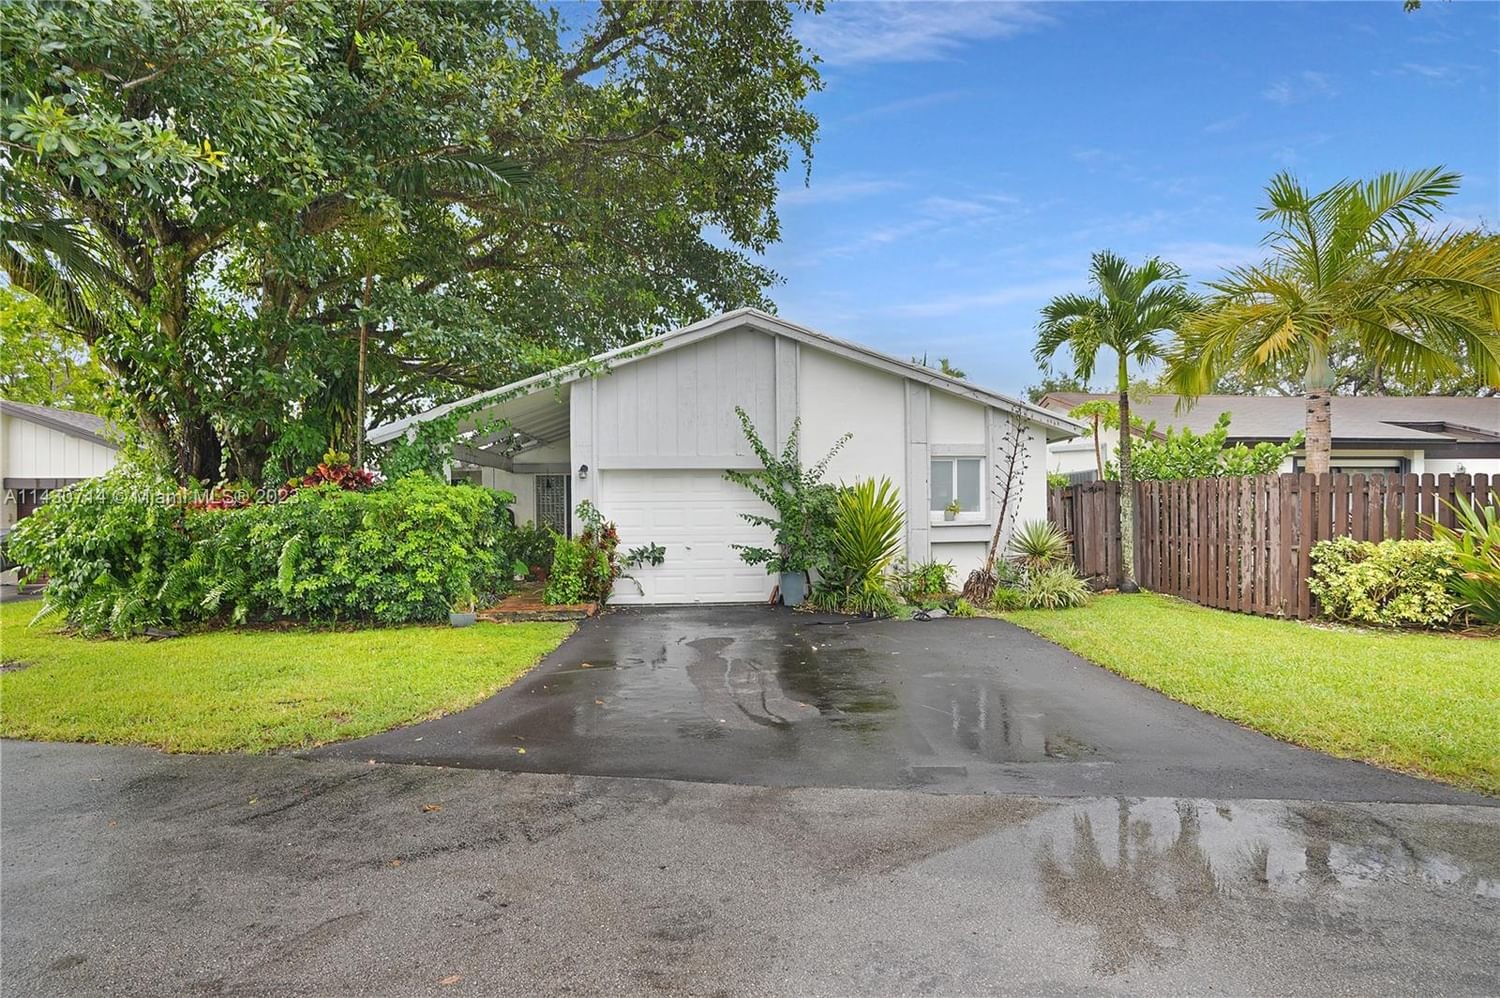 Real estate property located at 13617 114th Ln, Miami-Dade County, Miami, FL